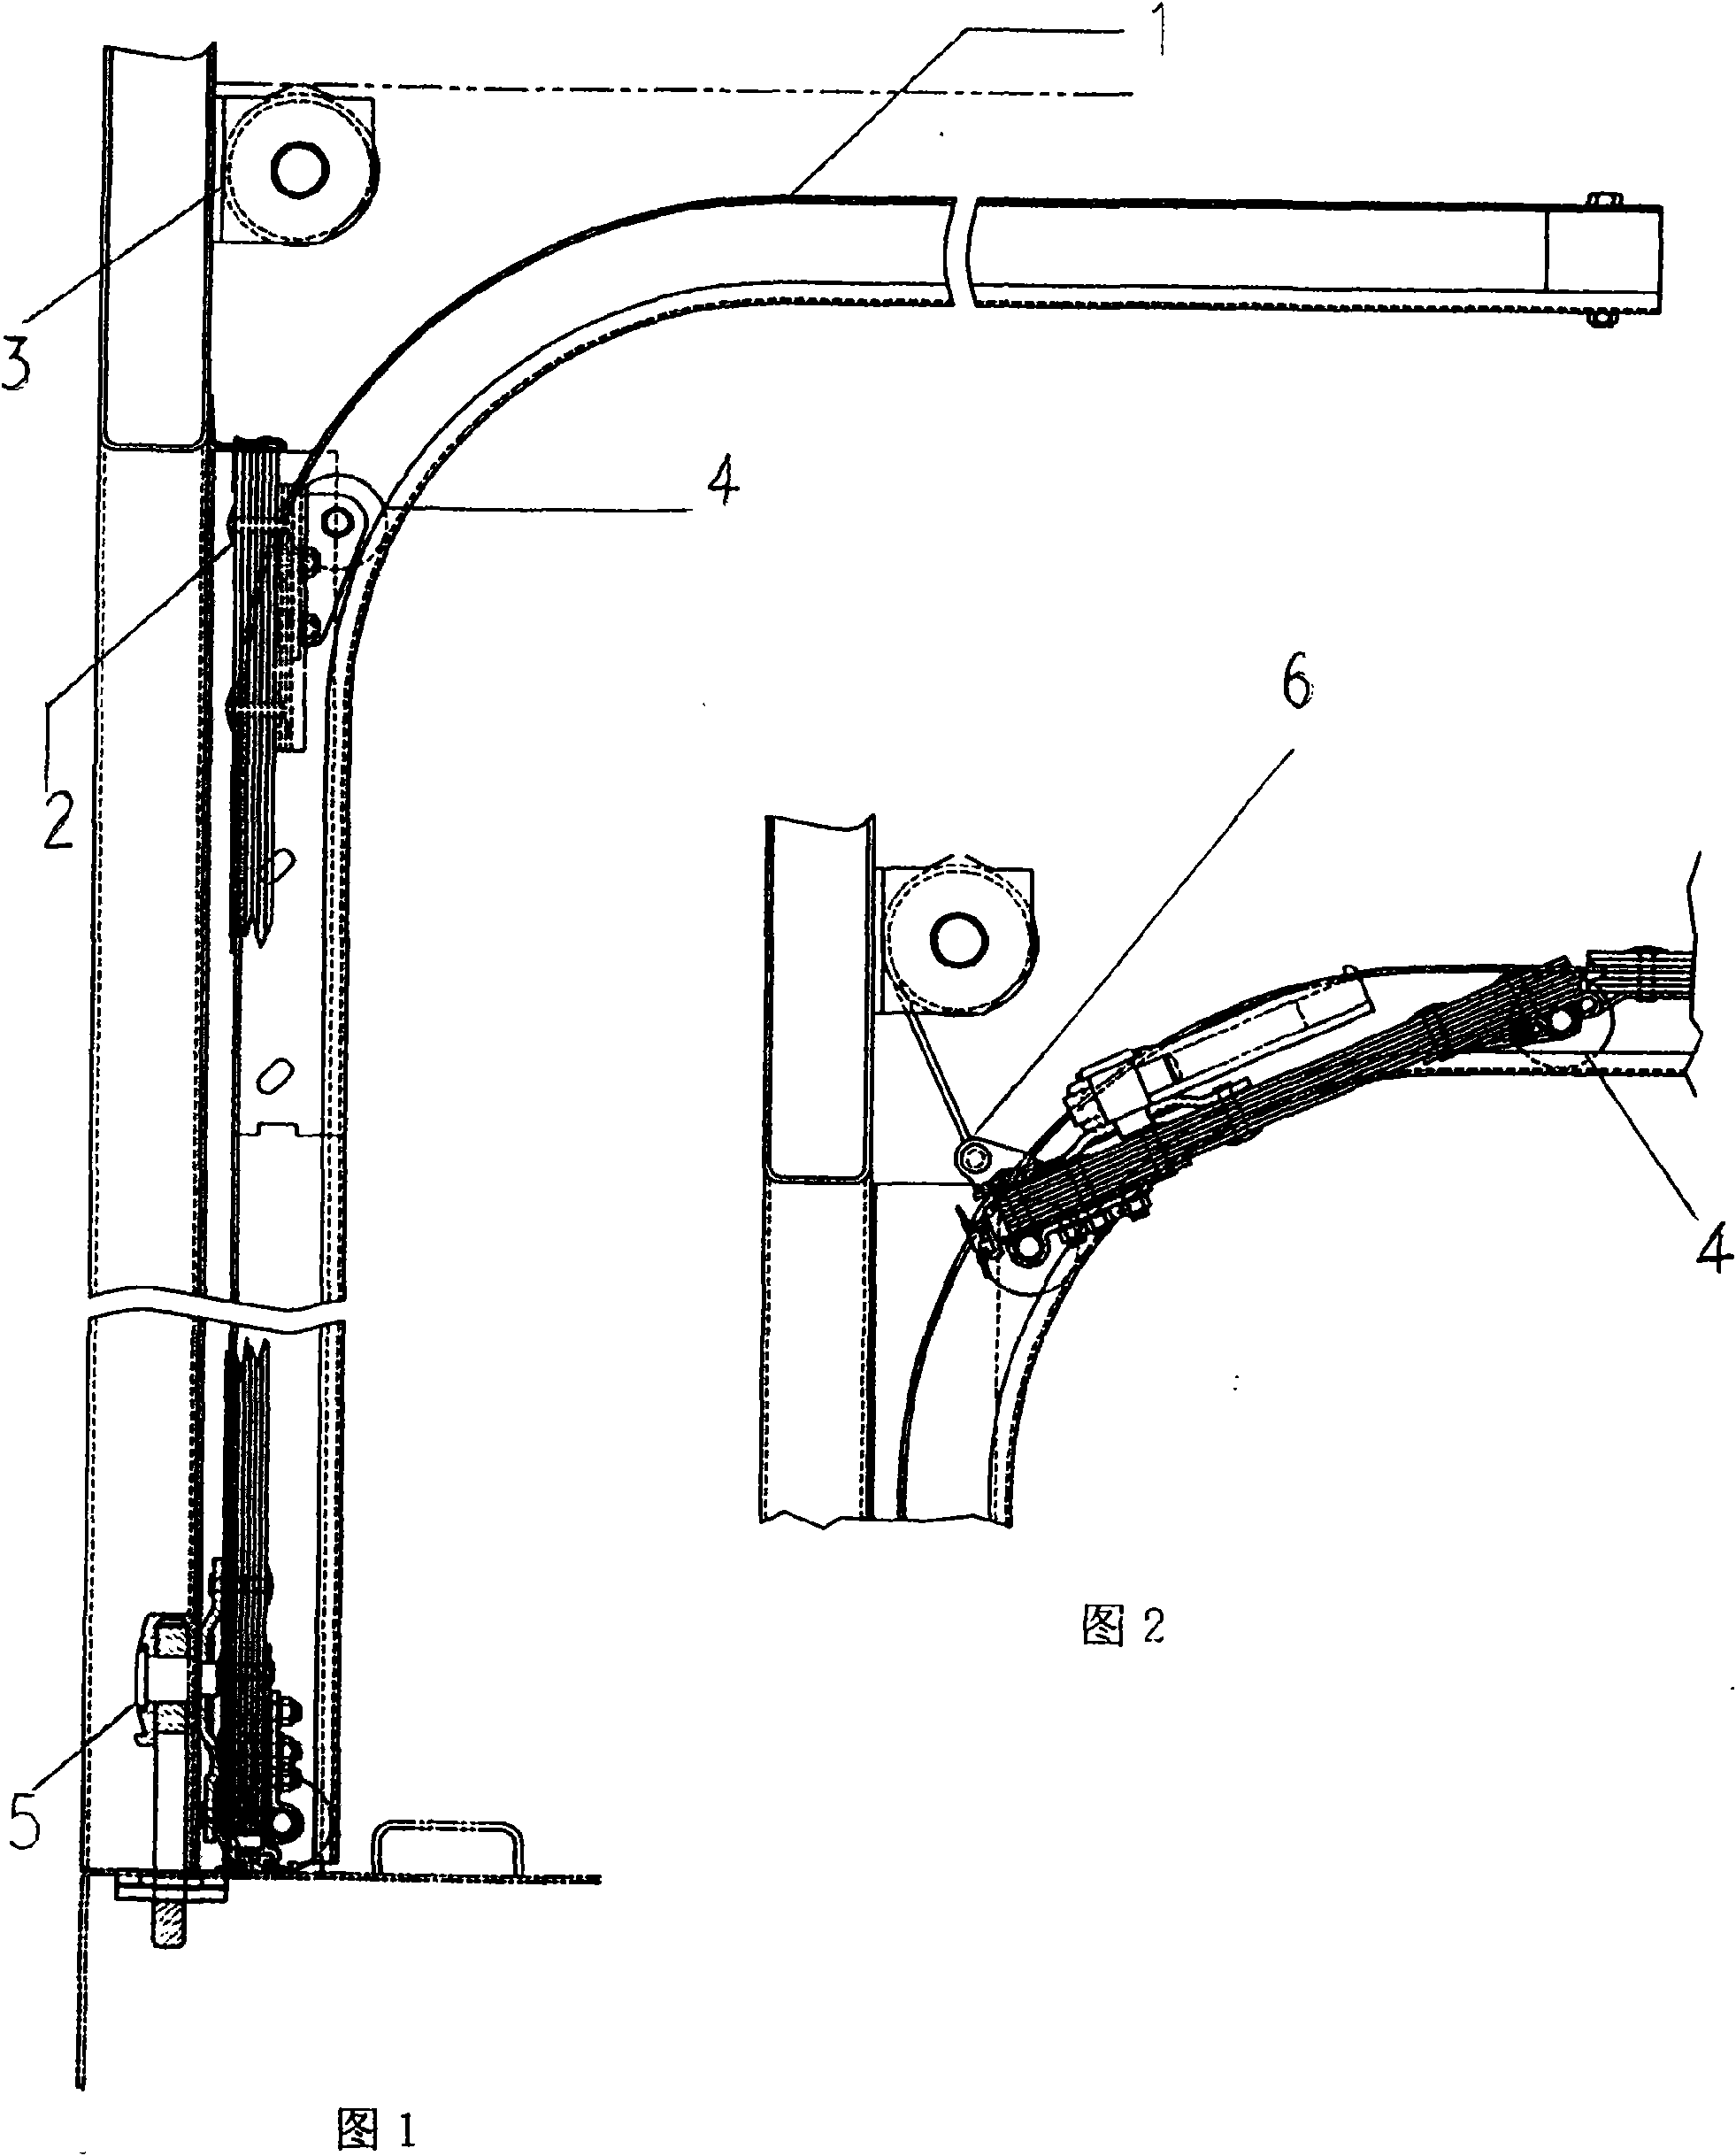 Upturning carriage door structure